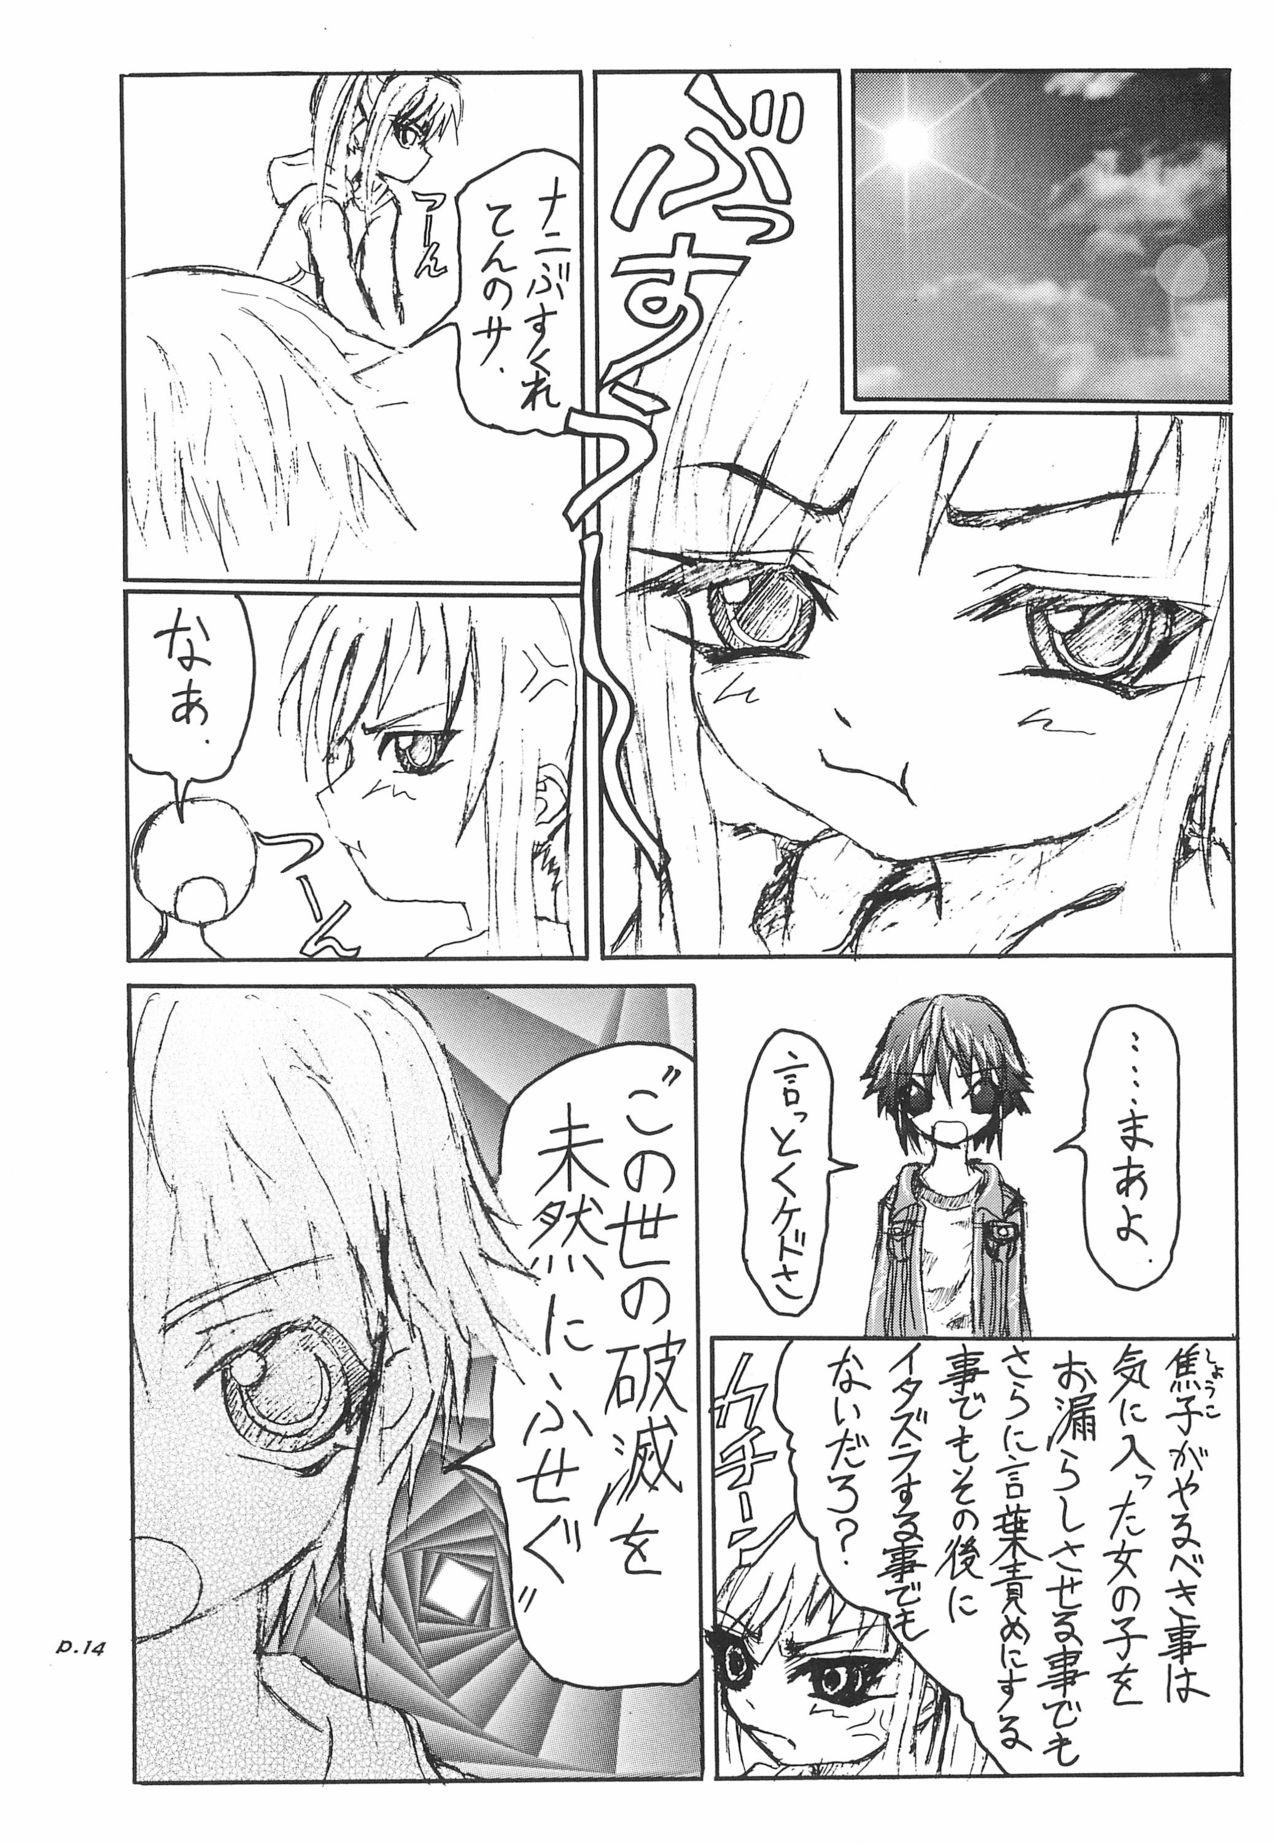 Moaning Gyara☆cter-05 - Original Pene - Page 14